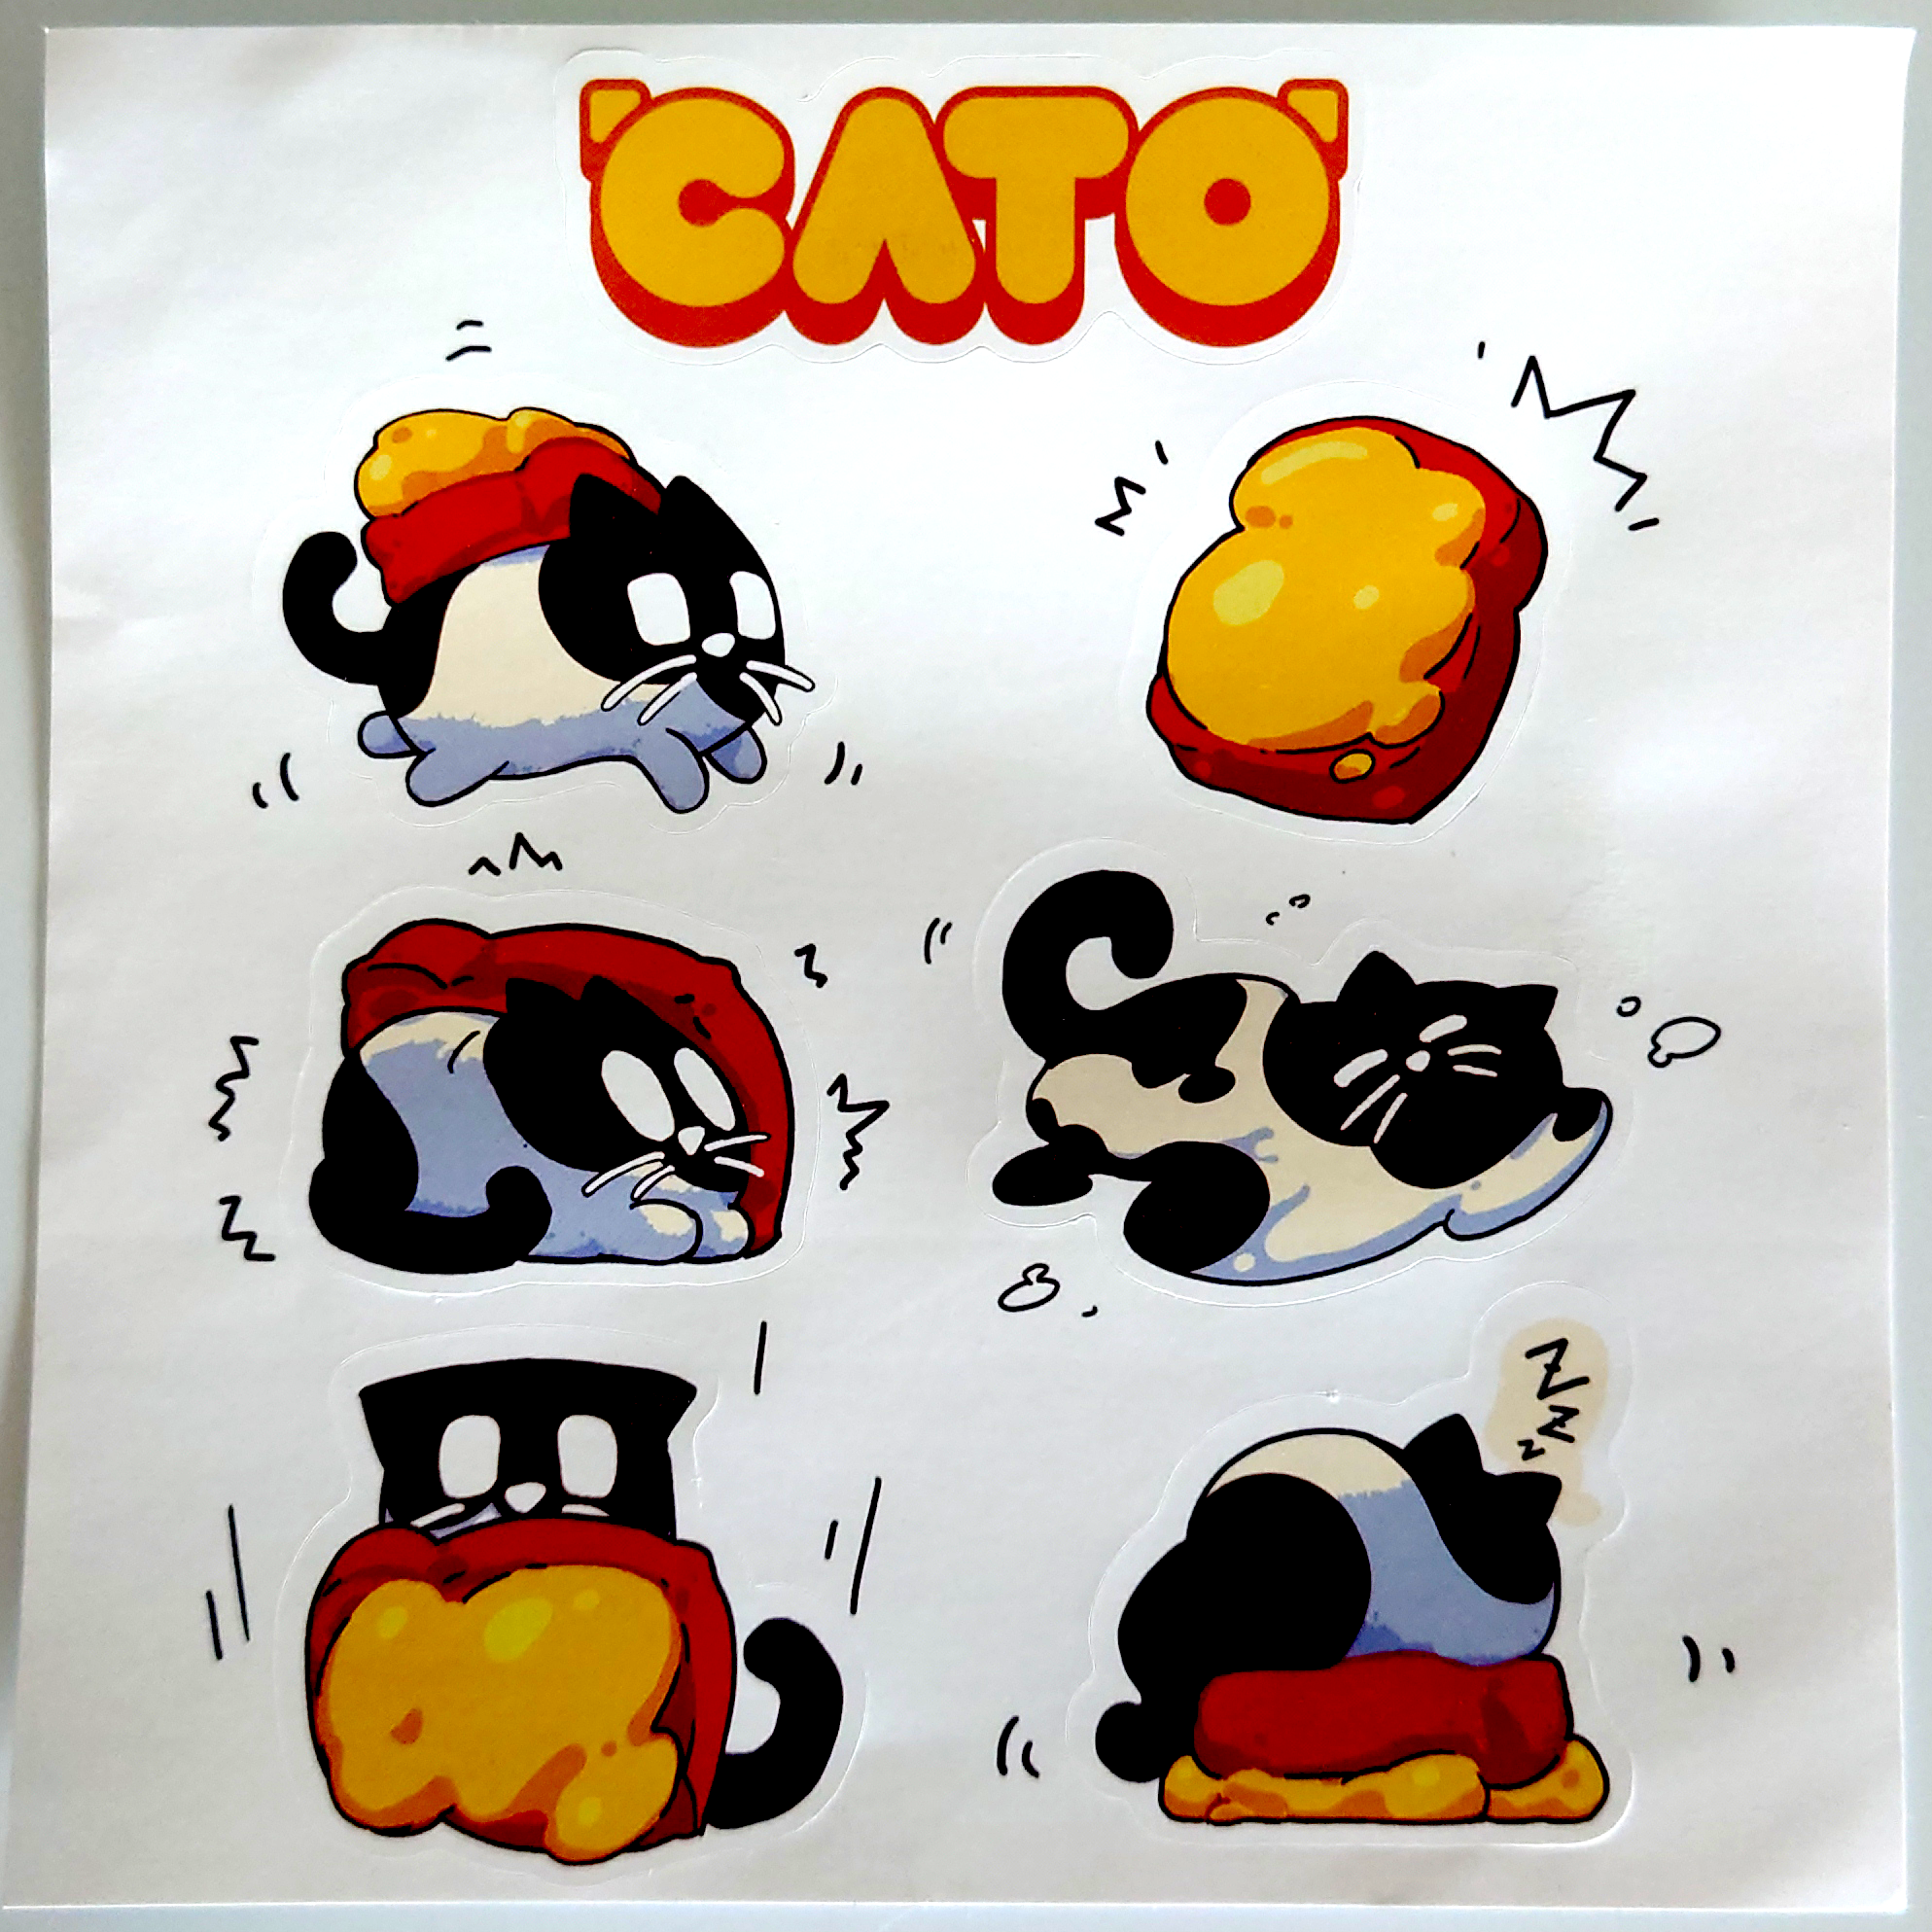 廣州核聚變最可愛紀念品:《CATO》貼紙！當然是捨不得貼了